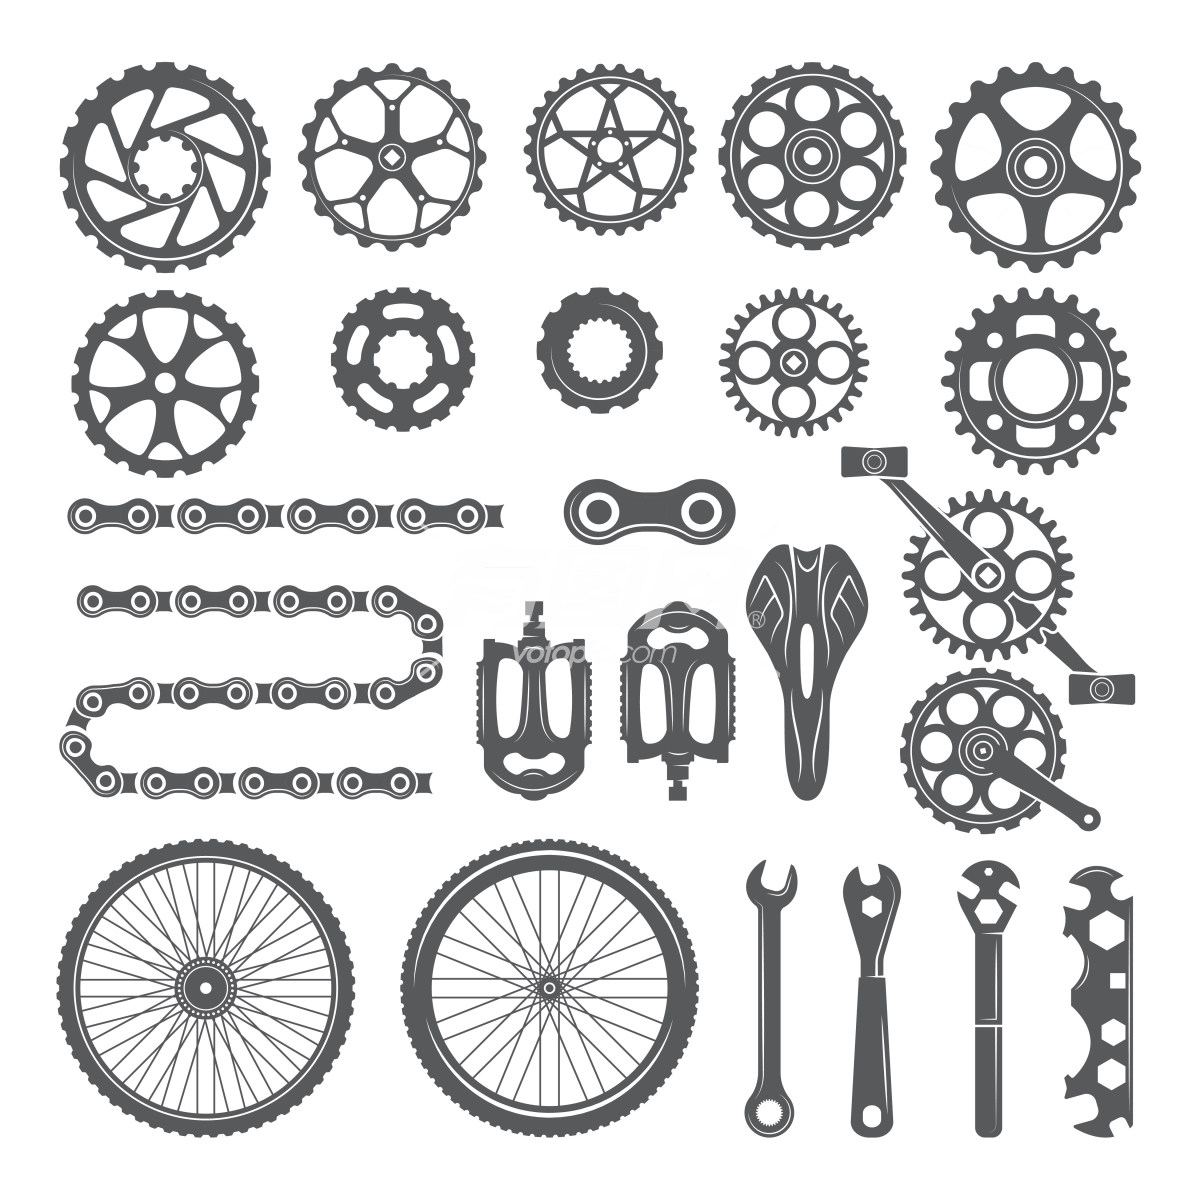 自行车零件的图标集